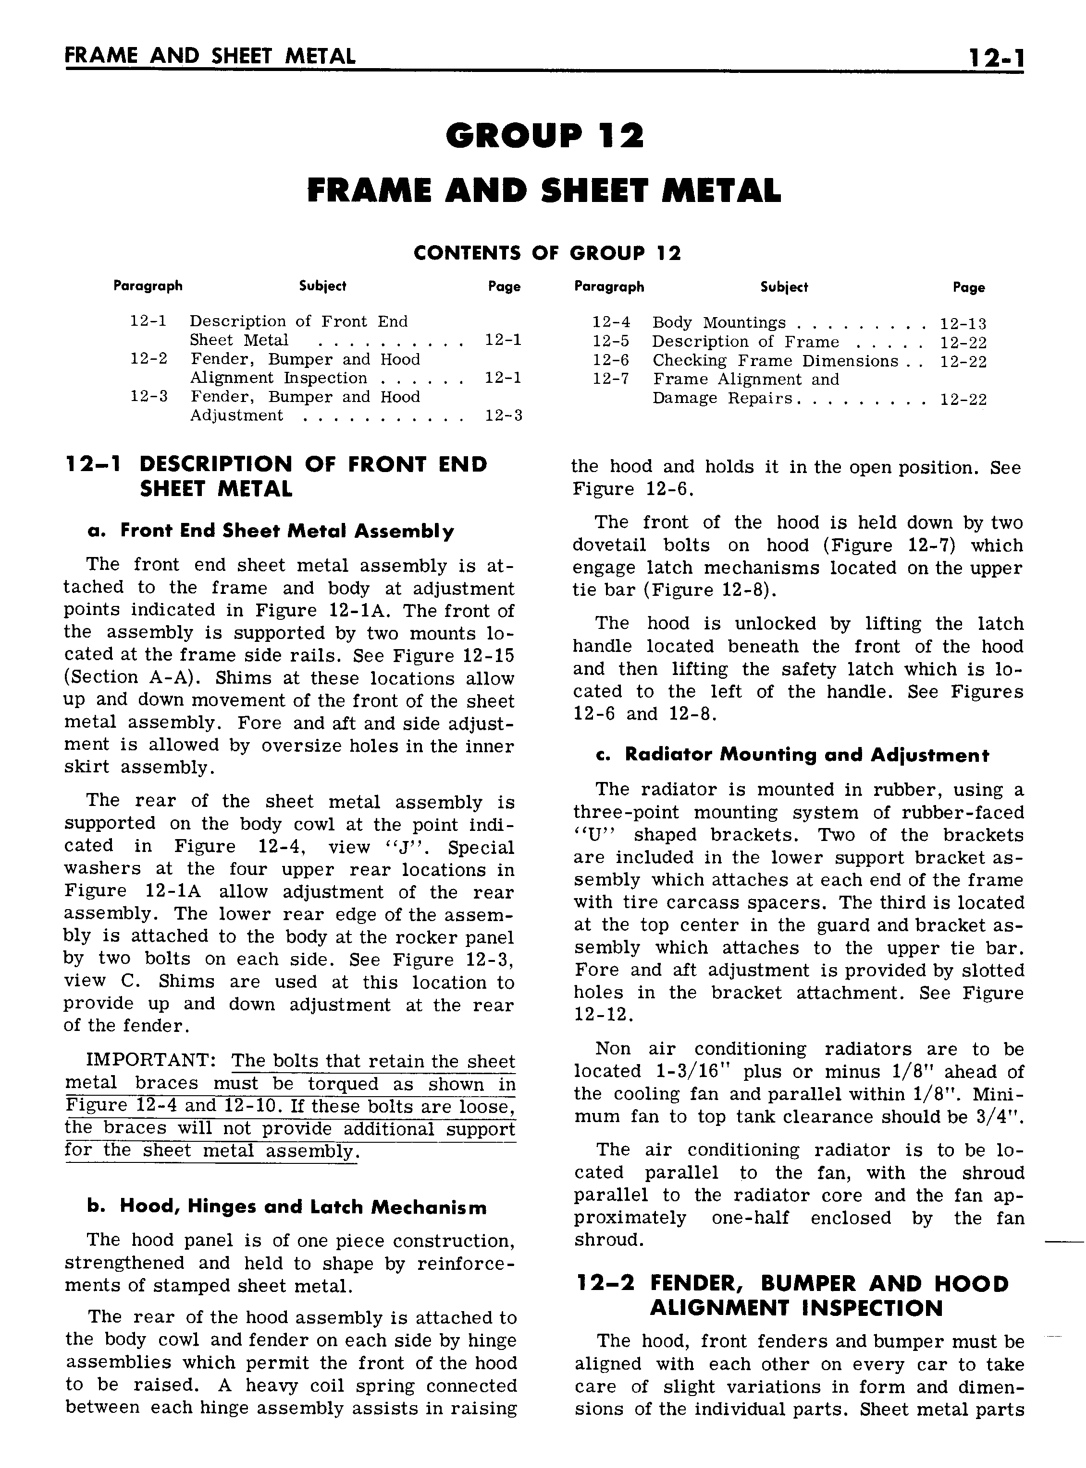 n_12 1961 Buick Shop Manual - Frame & Sheet Metal-001-001.jpg